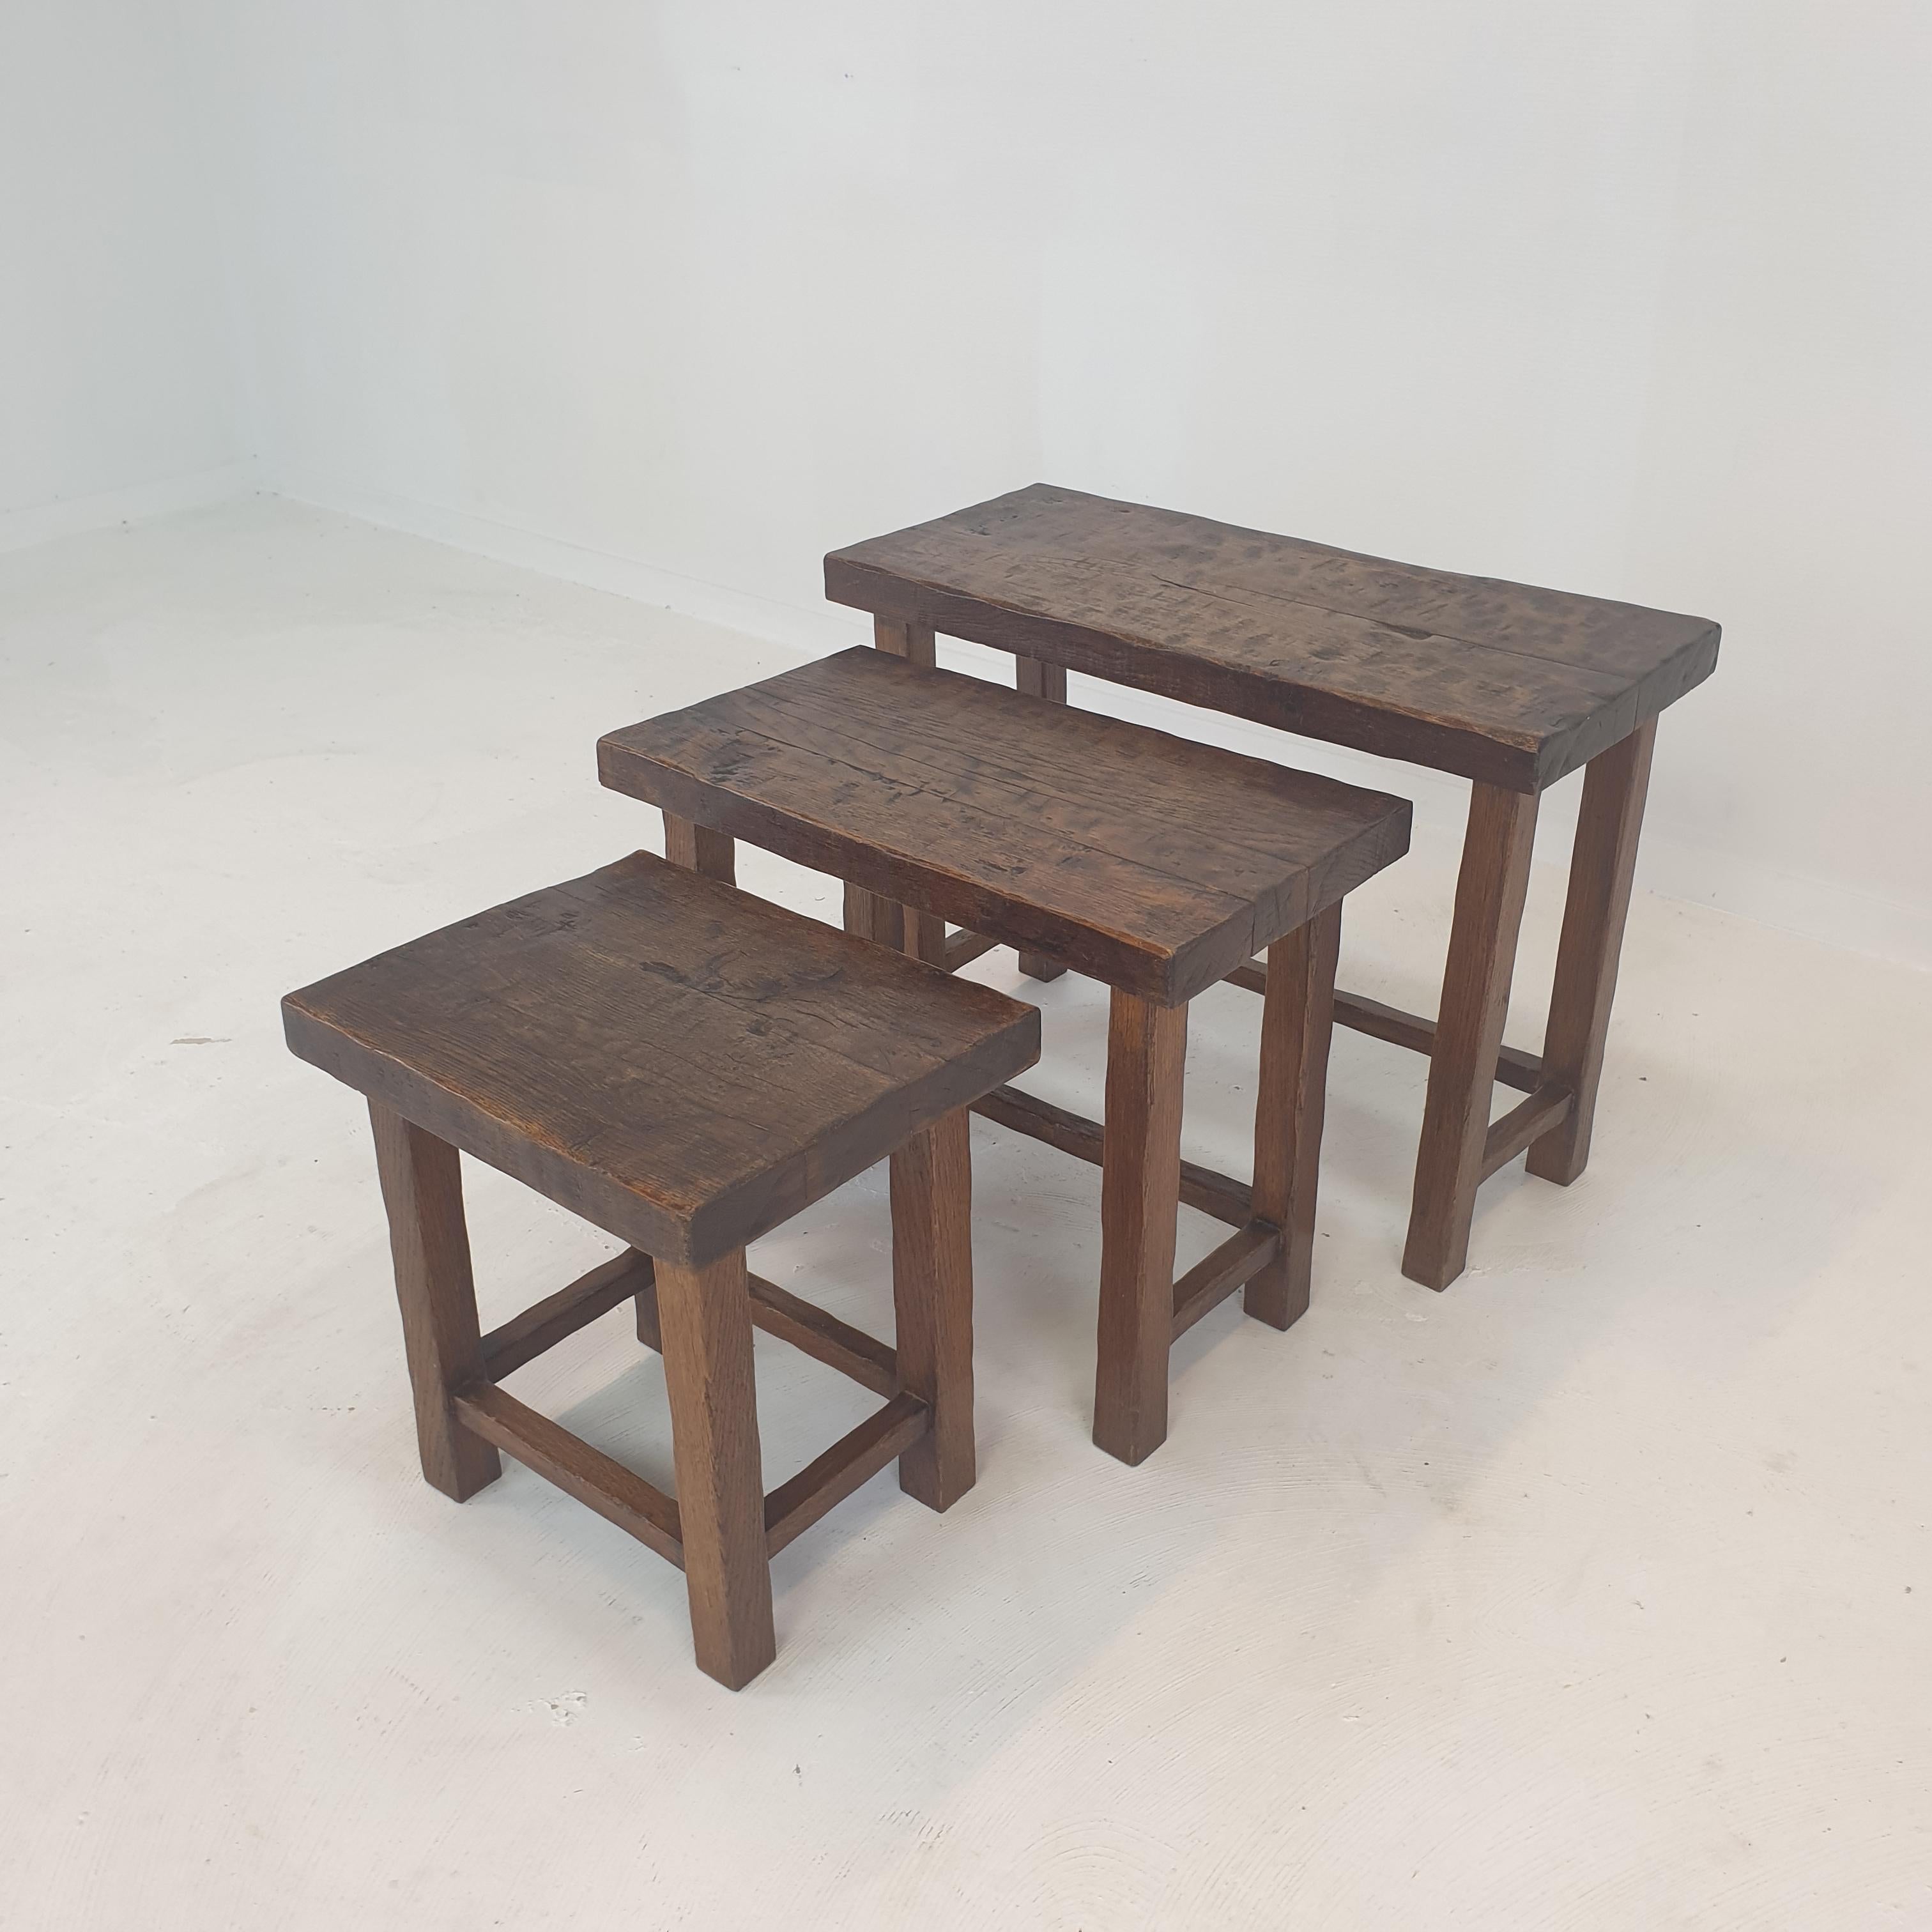 Très bel ensemble de 3 tables basses ou gigognes, années 1960.
Les tables ont toutes une taille différente pour qu'elles s'emboîtent les unes dans les autres.

Cet ensemble brutaliste est fabriqué à la main en bois de chêne.